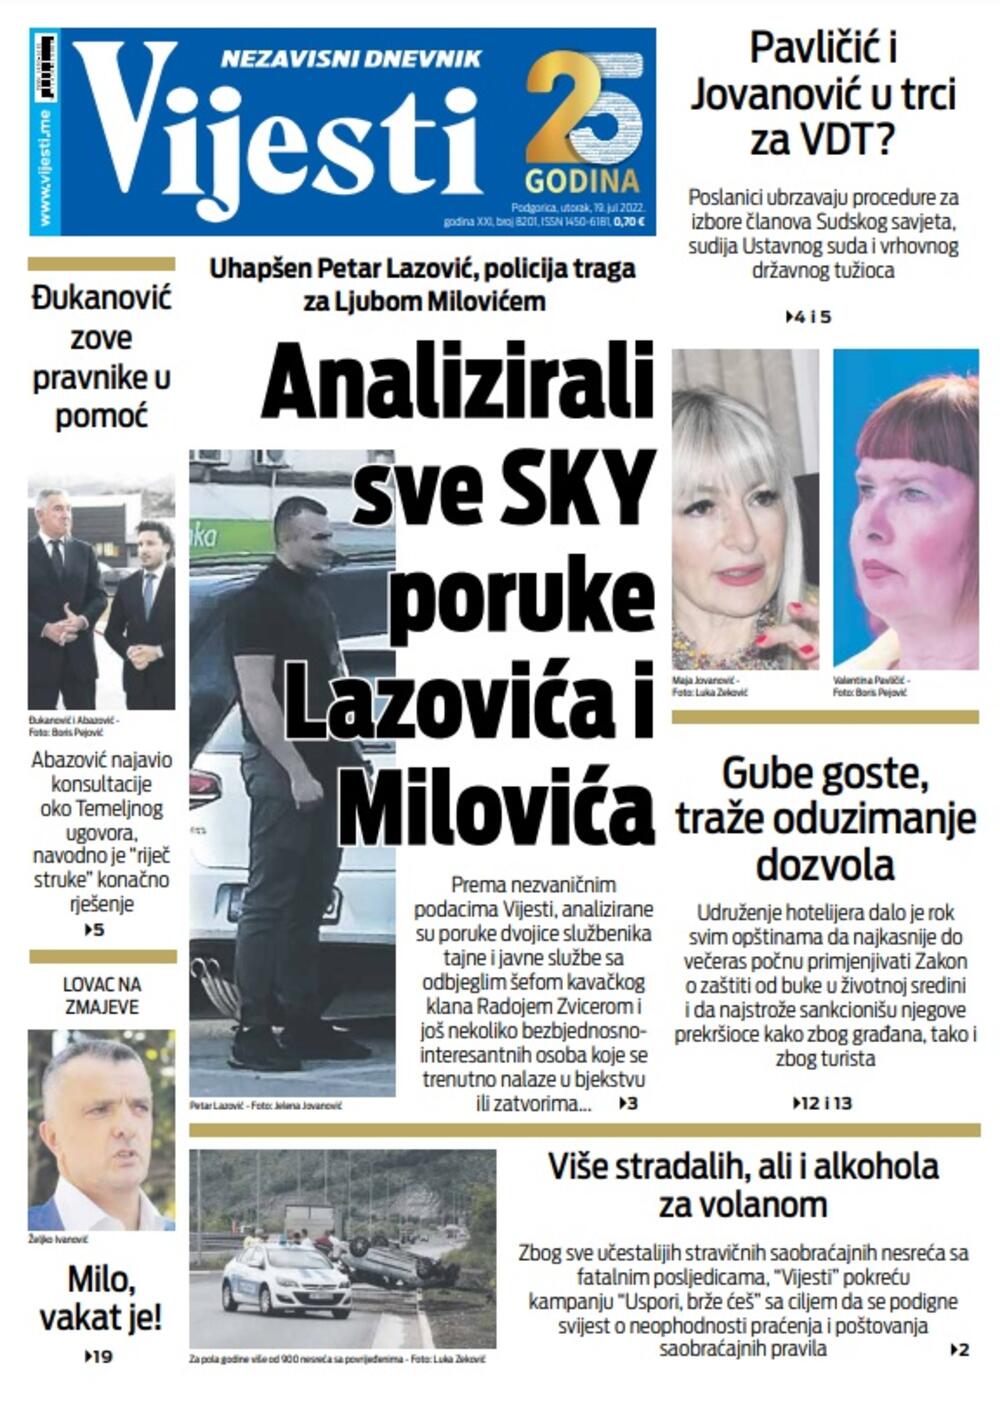 Naslovna strana "Vijesti" za utorak 19. jul, Foto: Vijesti